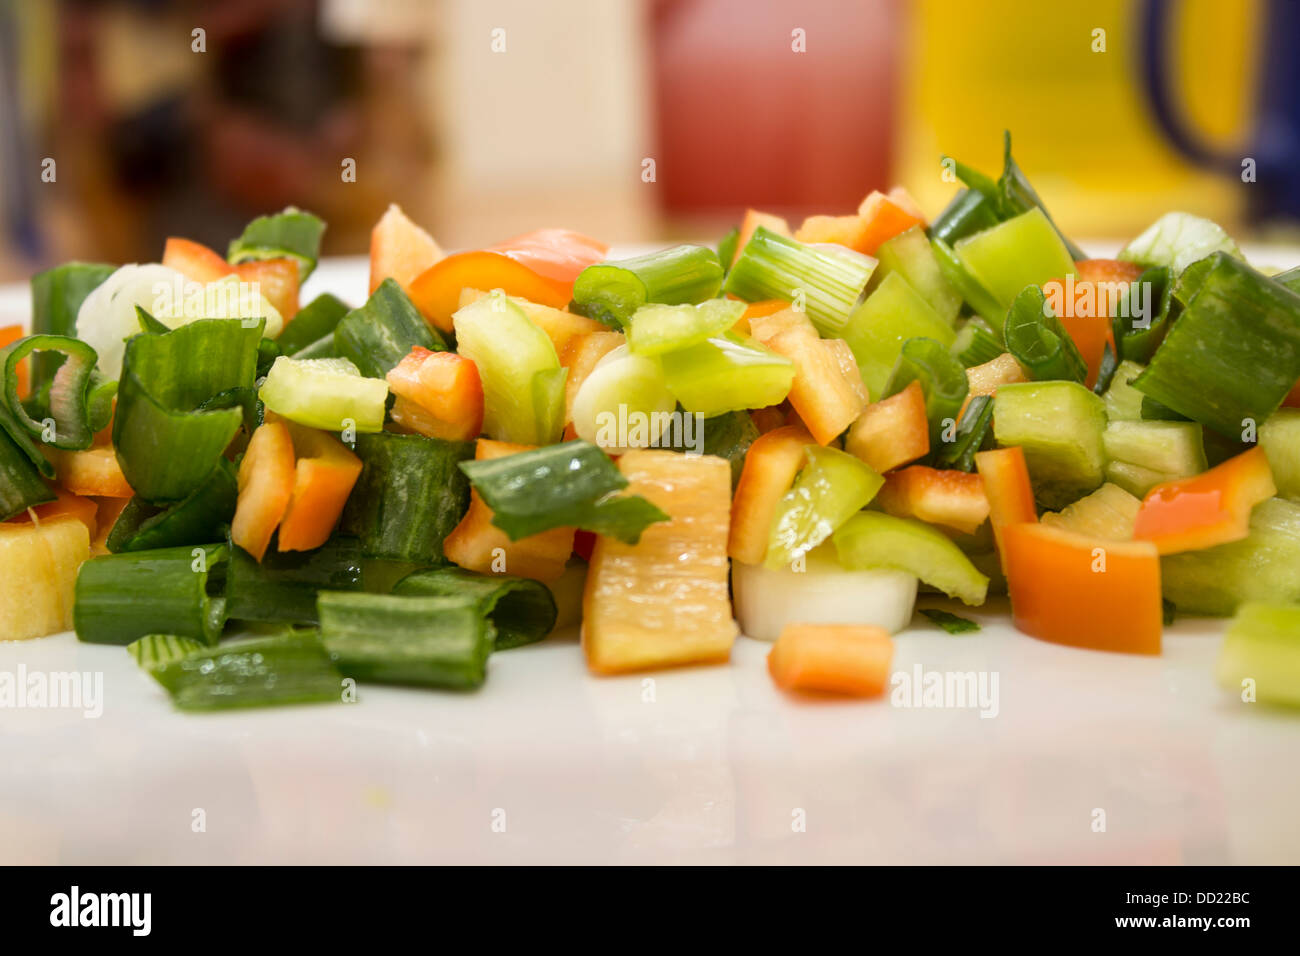 Les légumes dans une assiette Banque D'Images